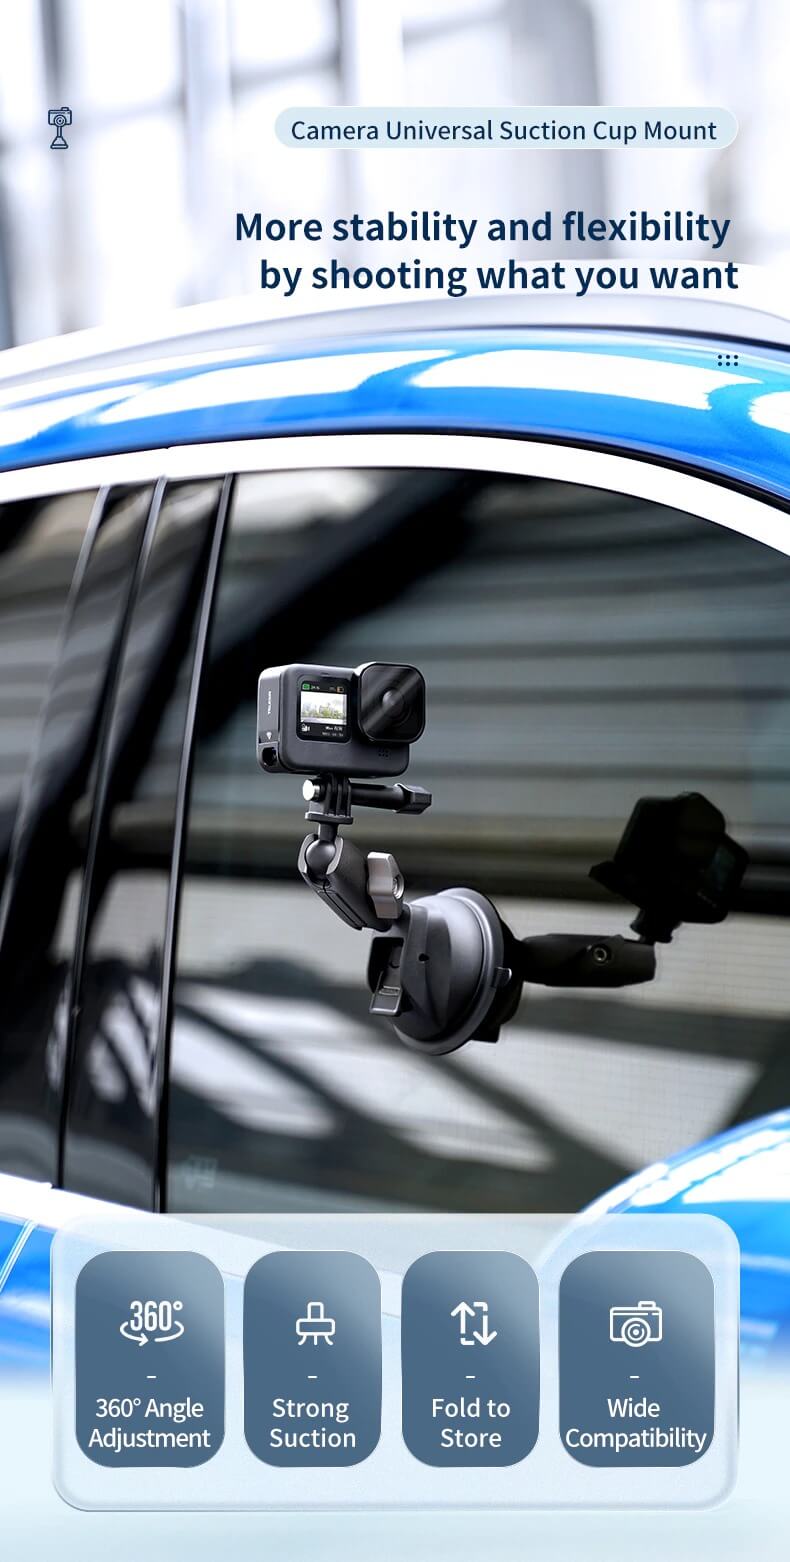 Giá Đỡ GoPro Action Cam Điện Thoại Hít Kính Telesin